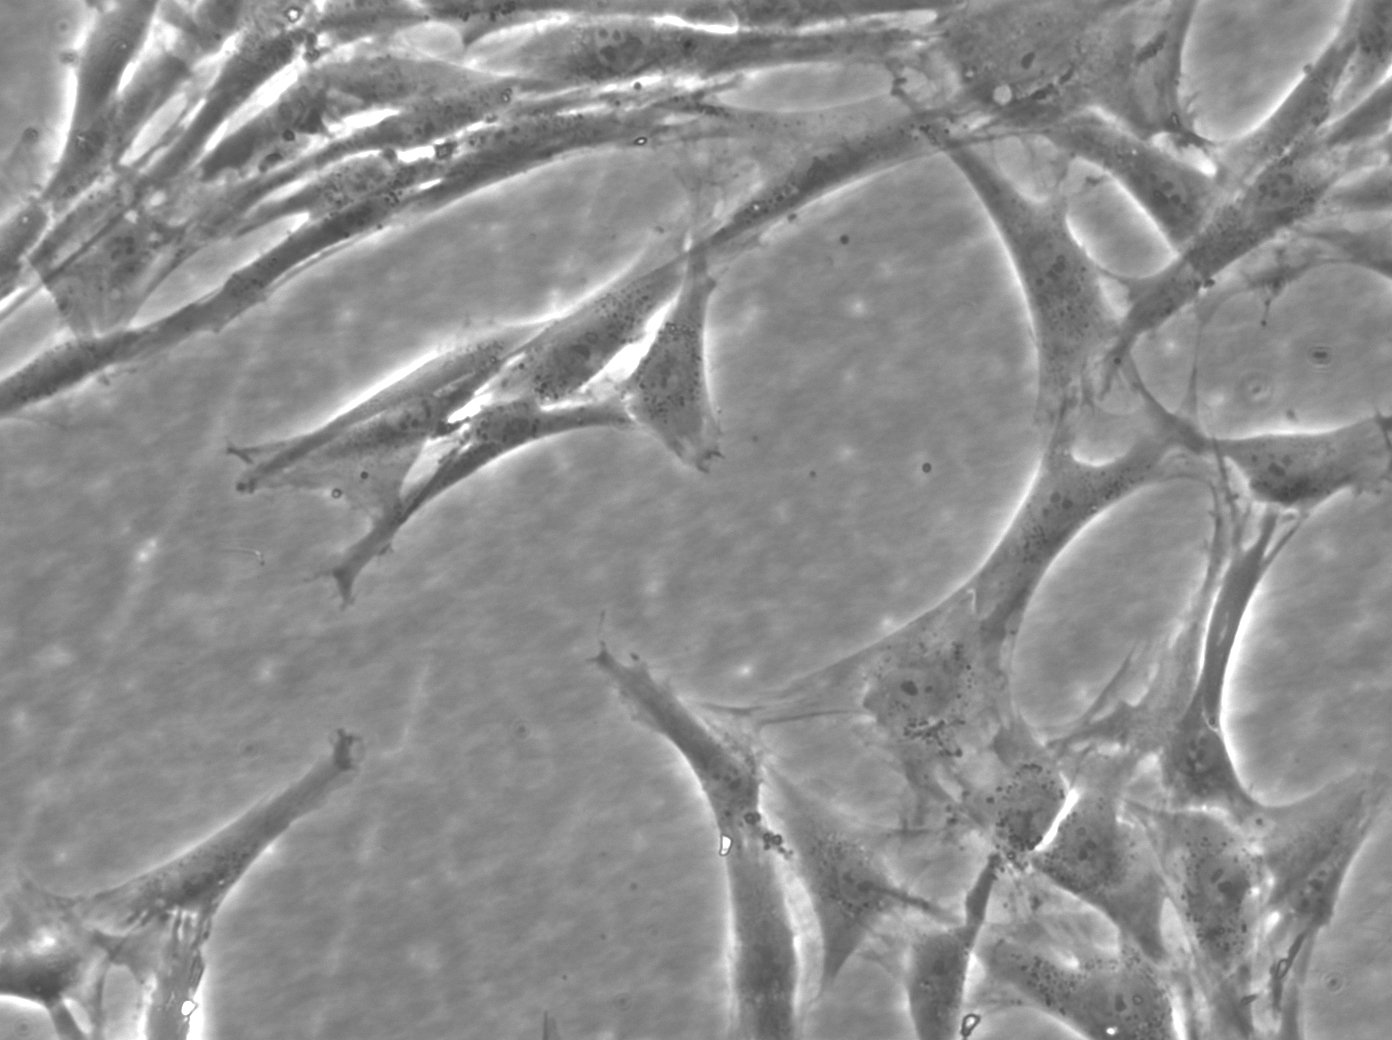 Cellules de fibroblastes de peau humaine (HFFC)